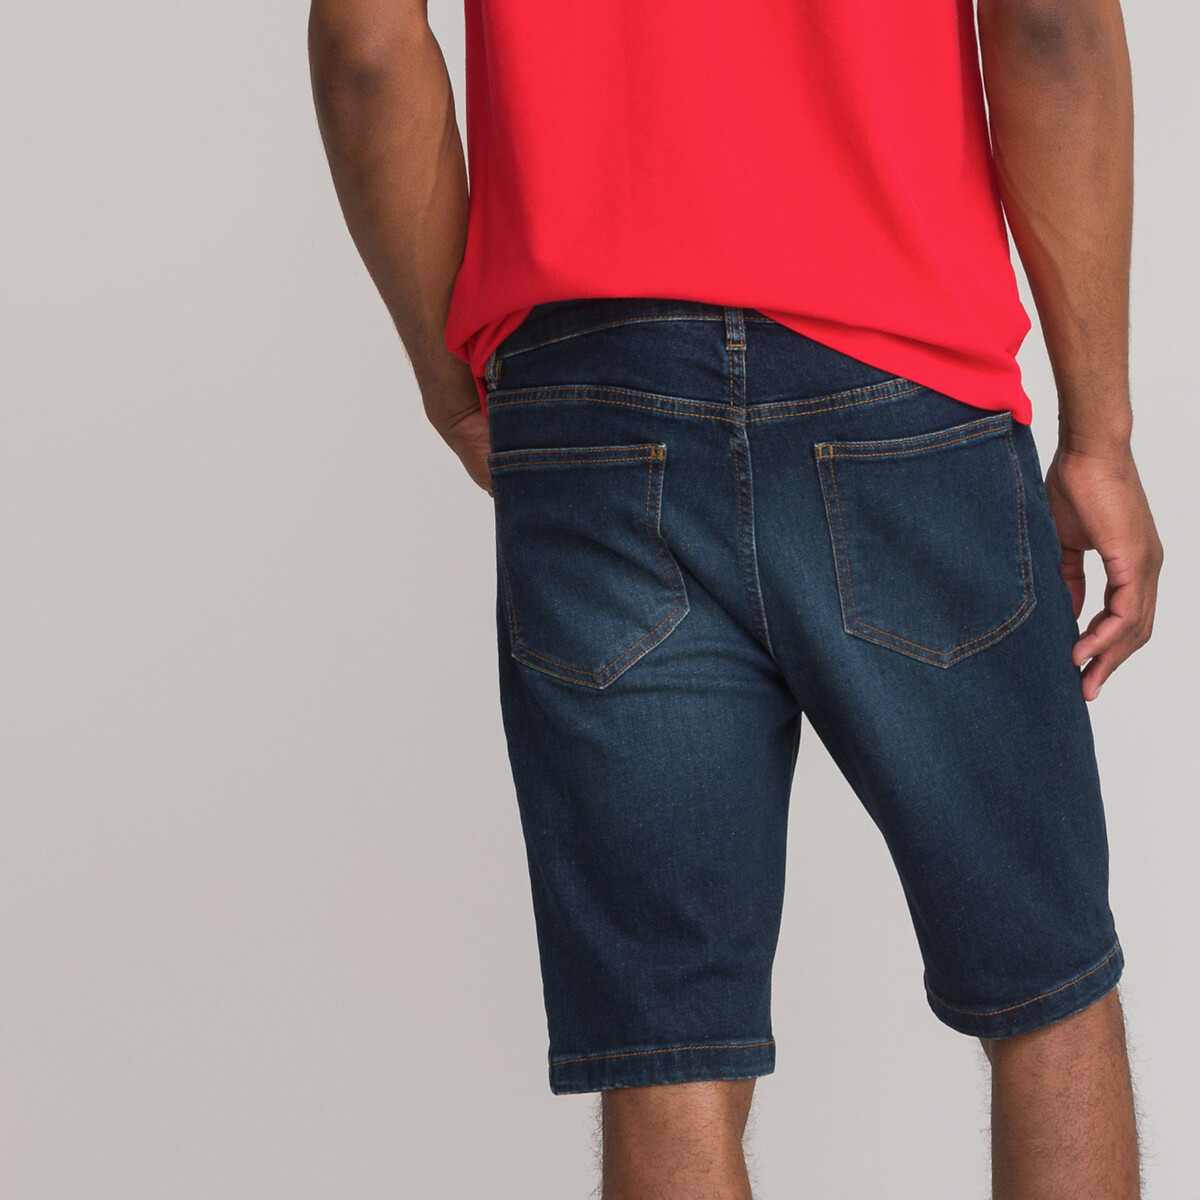 La Redoute Garçon Vêtements Pantalons & Jeans Pantalons courts Bermudas Short TWILL 